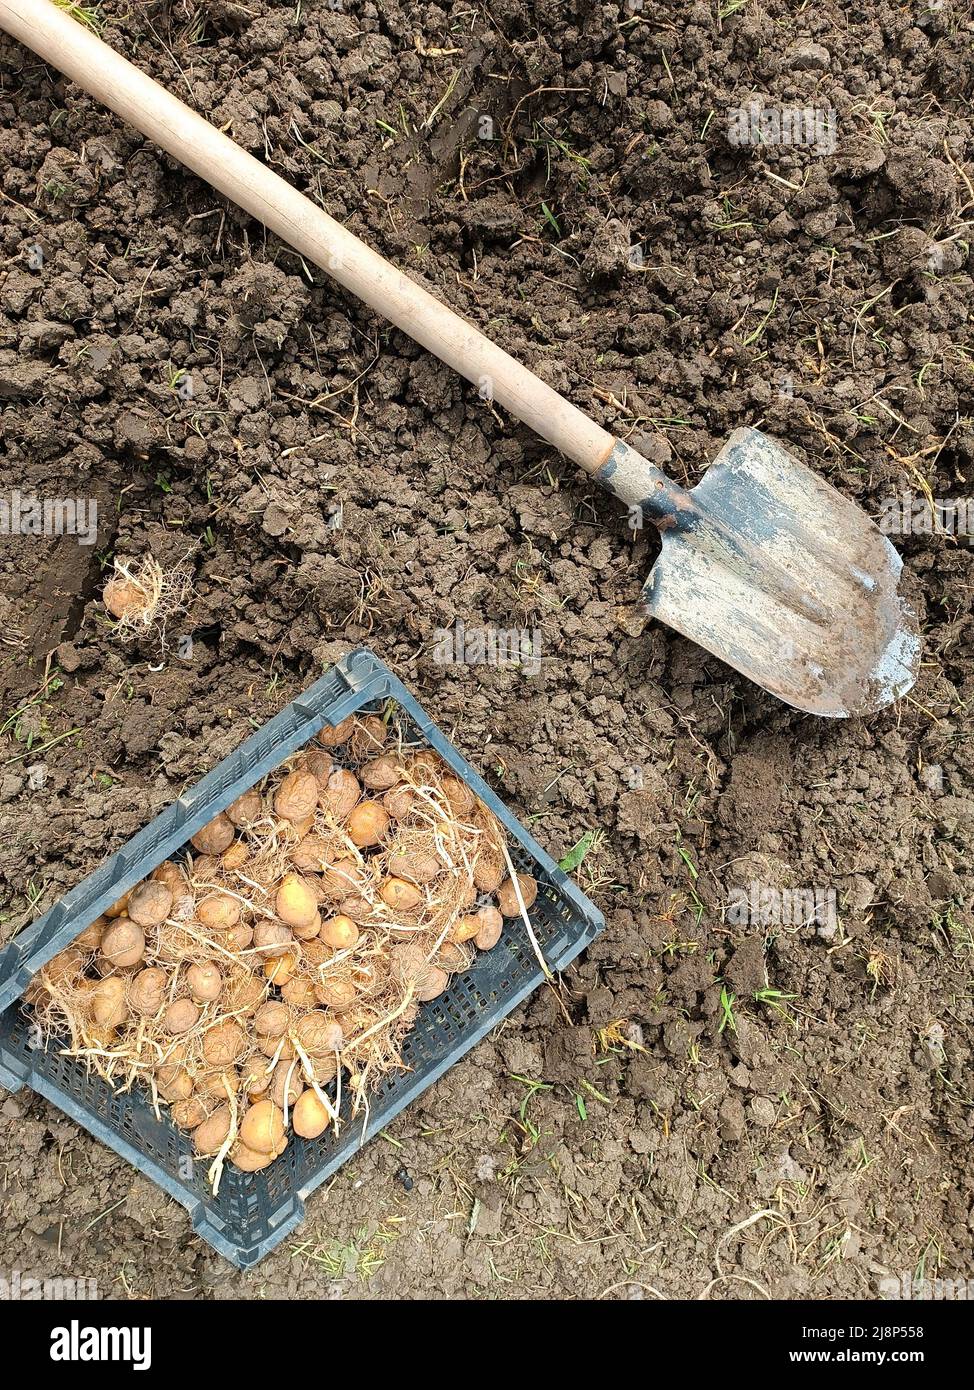 Piantando patate nel giardino. Una scatola con patate germinate, una pala e un buco nel terreno con un tubero. Foto Stock